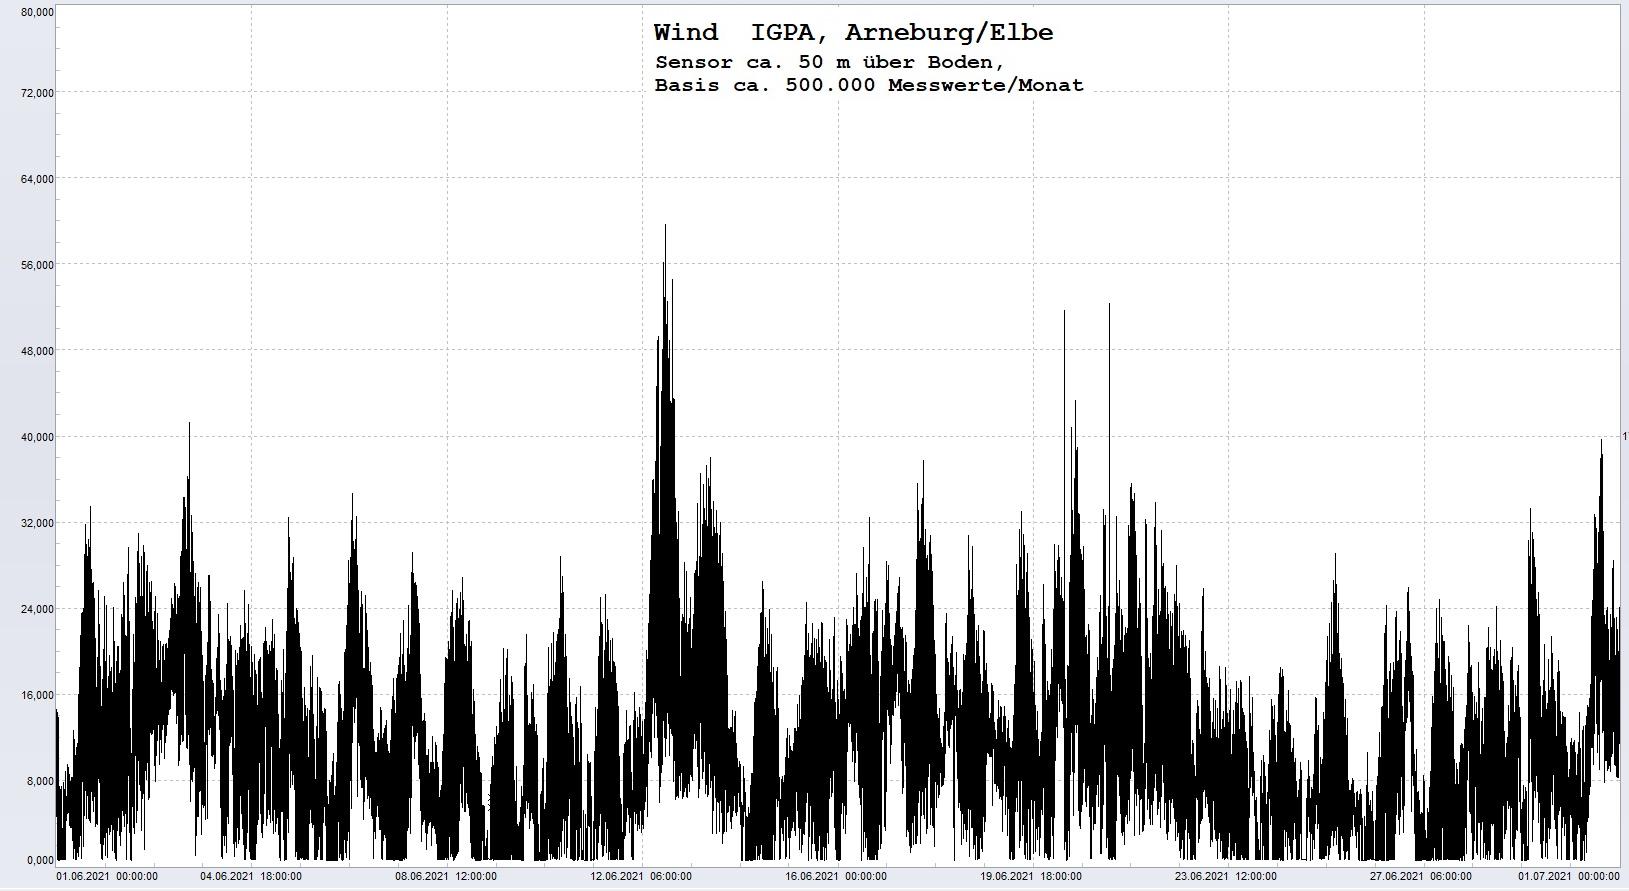 Arneburg Histogramm Winddaten Monat Juni 2021, 
  Sensor auf Gebäude, ca. 50 m über Erdboden, Basis: 5s-Aufzeichnung